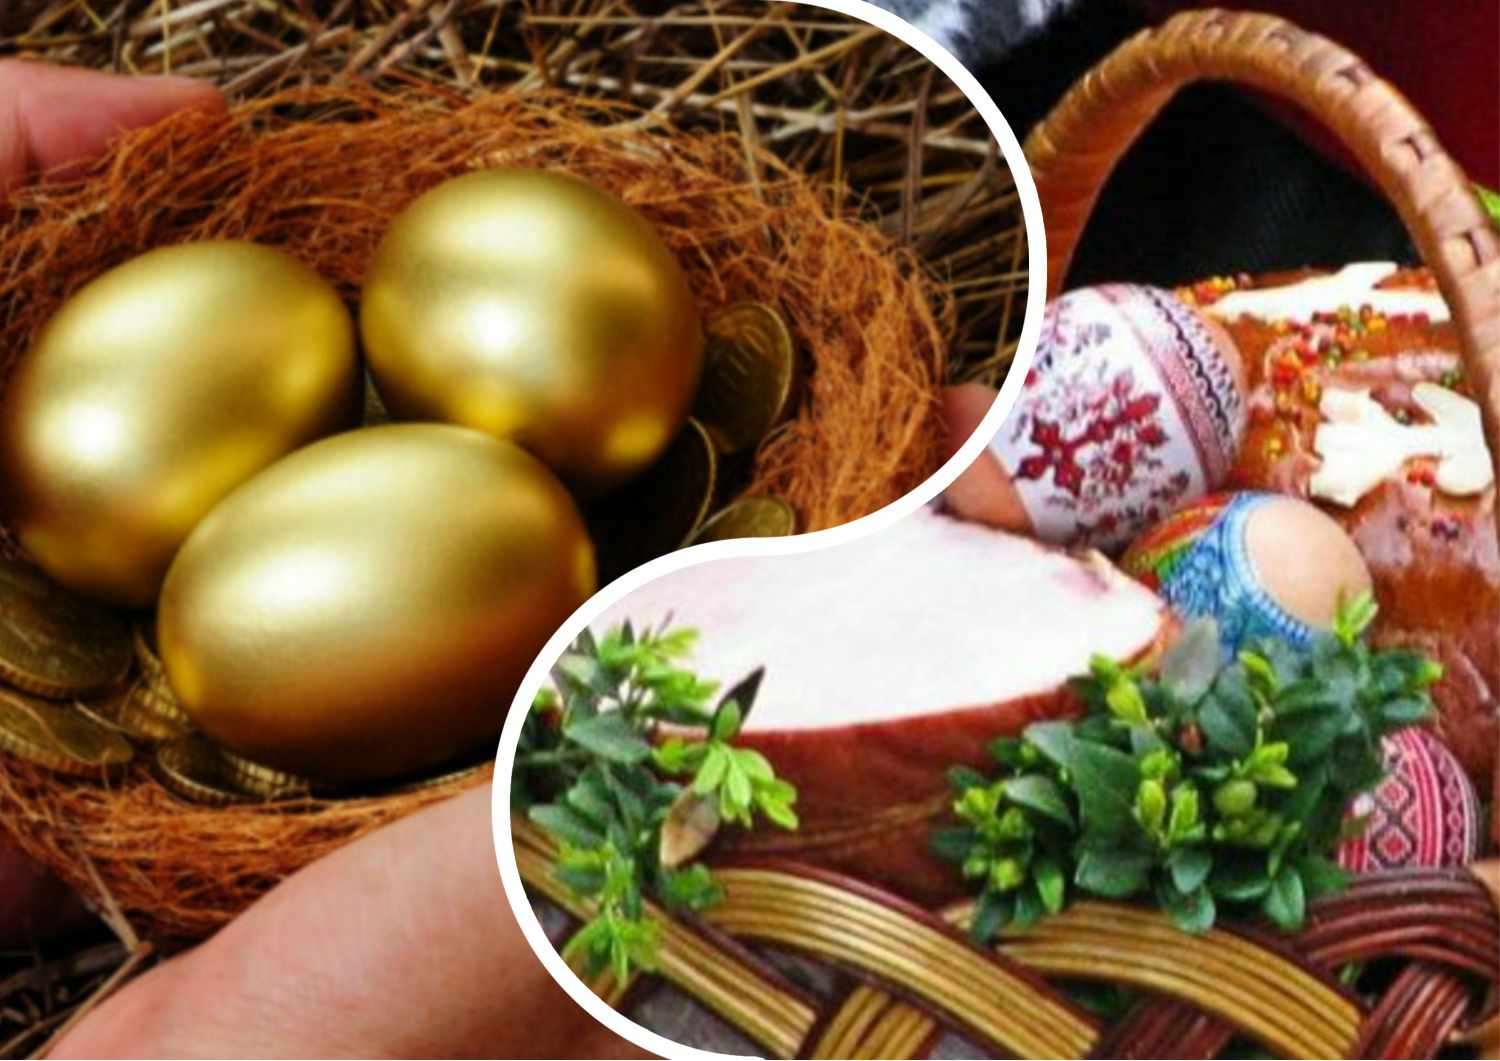 "Золоті яйця" напередодні Великодня: як вдарять по гаманцях закарпатців й чи буде, що нести на освячення?